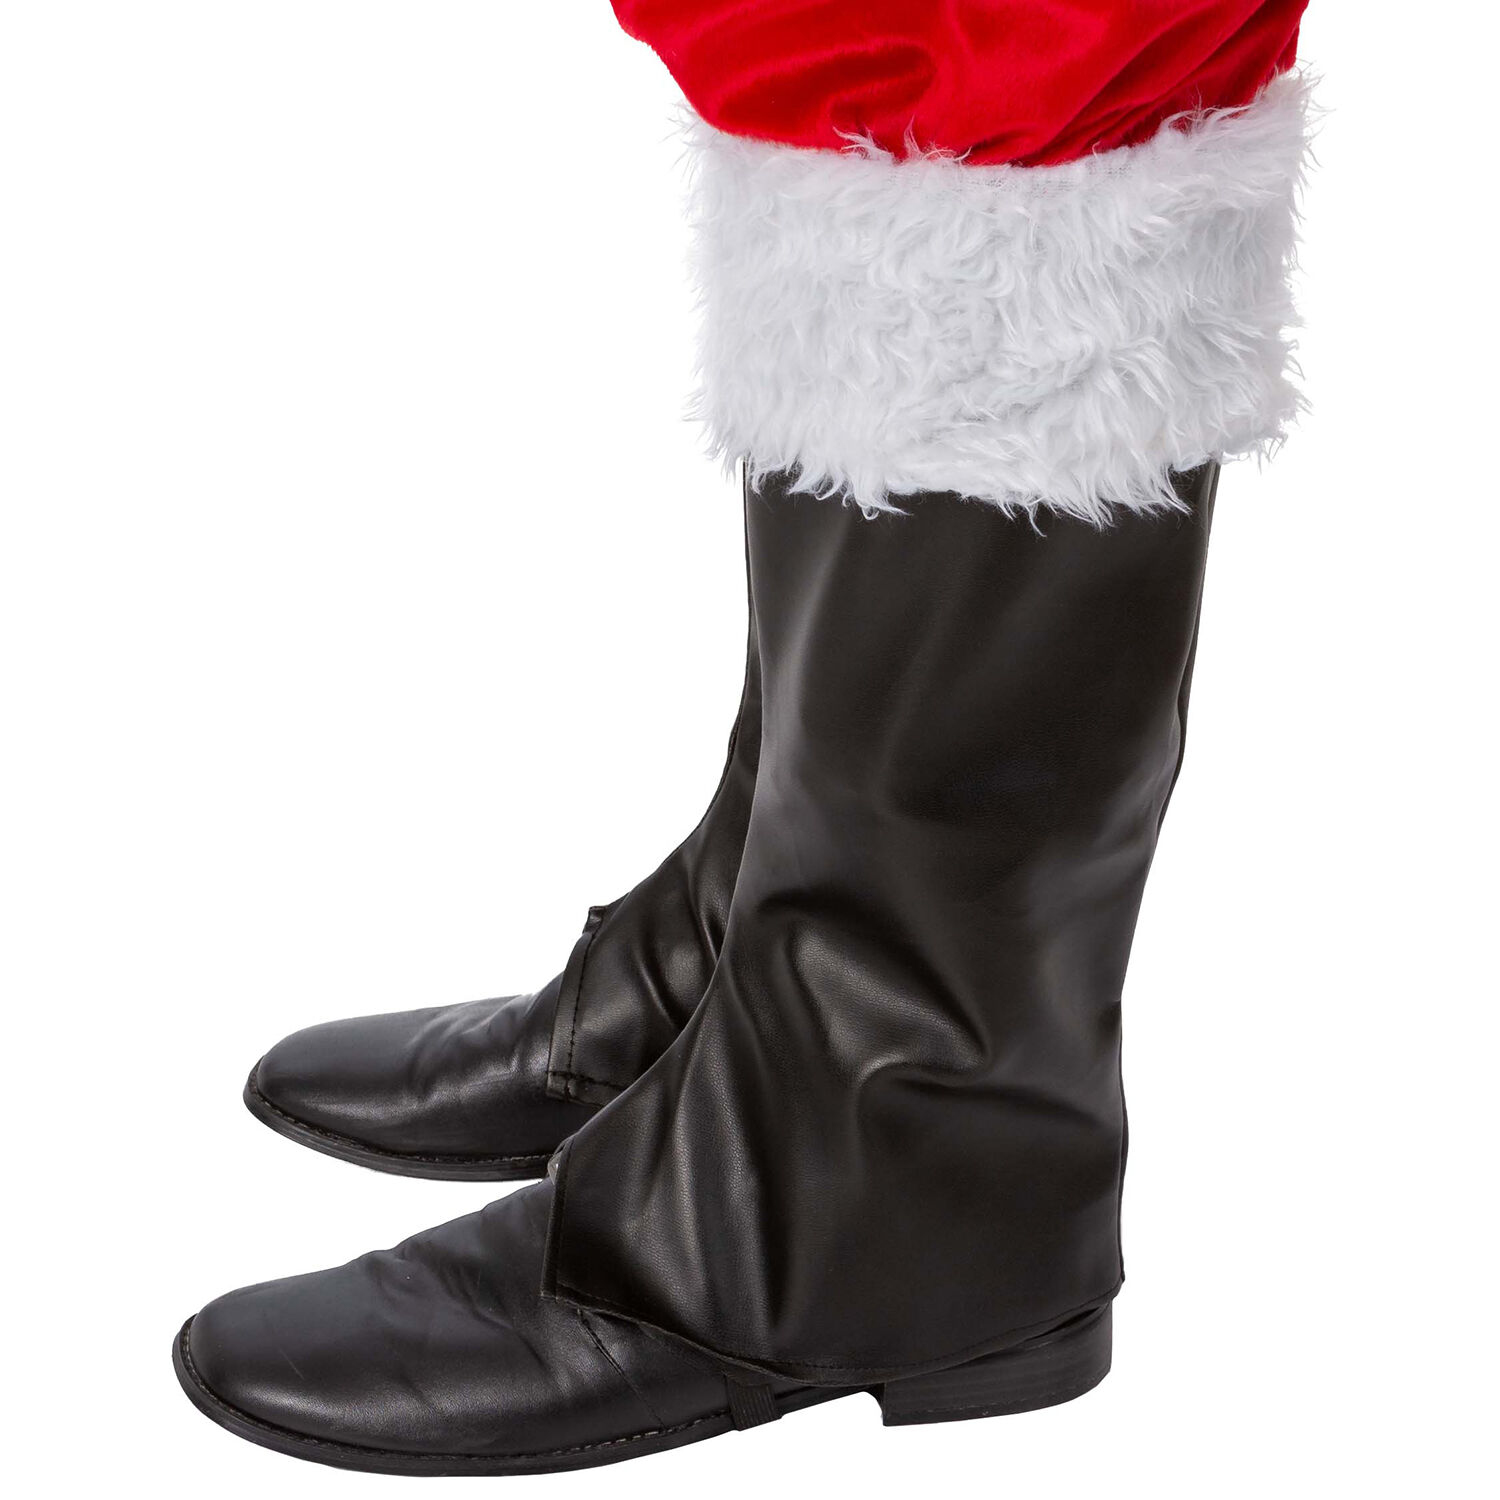 NEU Stiefelgamaschen Nikolaus/Weihnachtsmann, mit Plschbesatz, schwarz-wei Bild 3